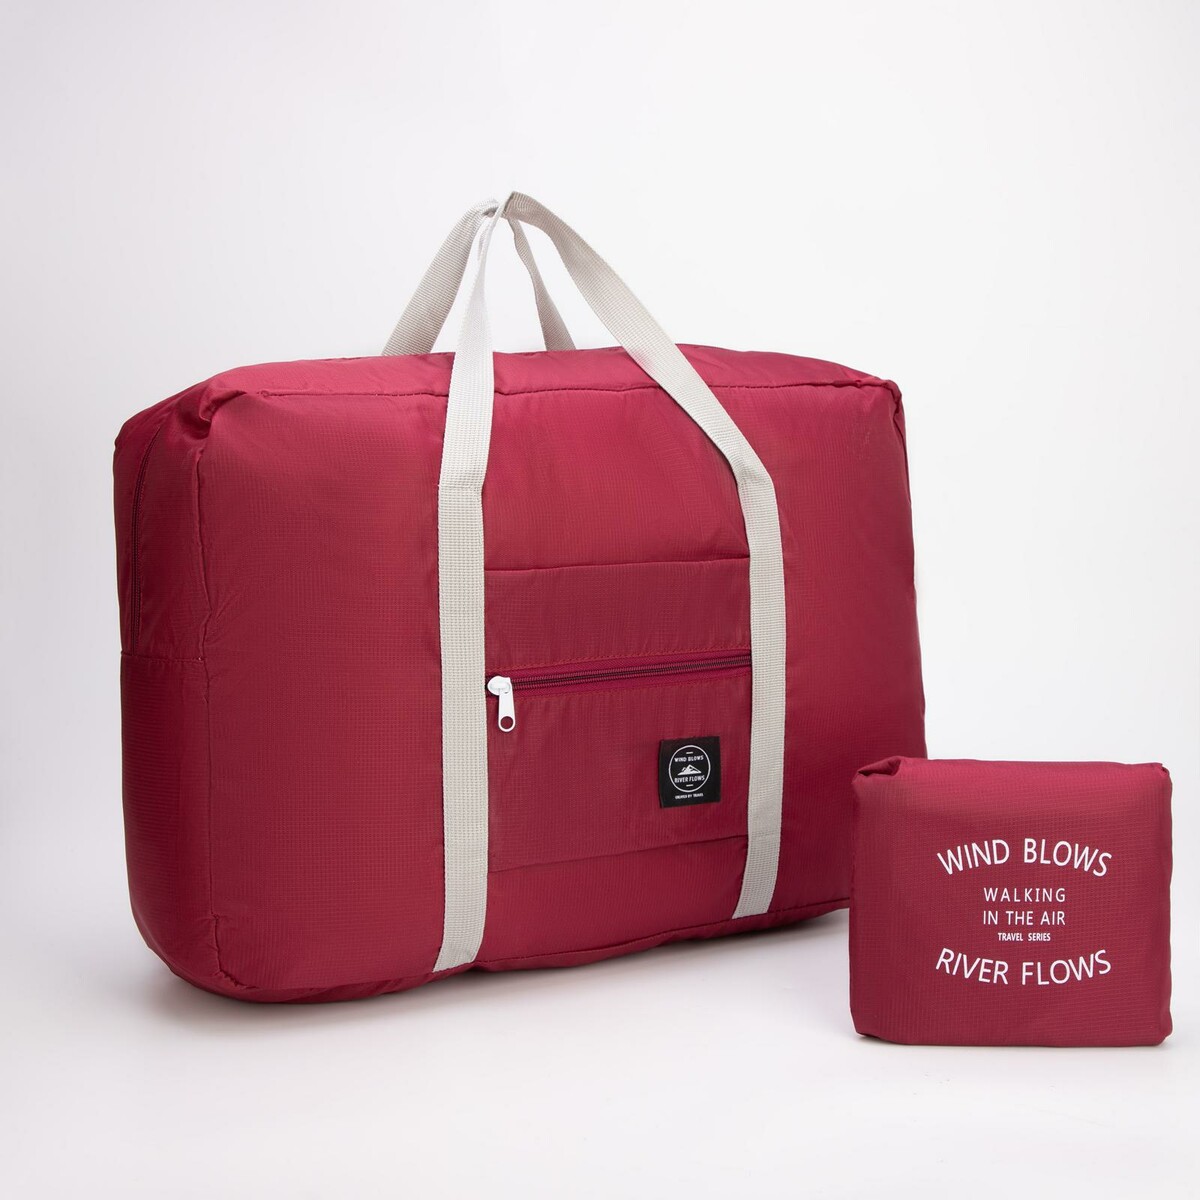 Сумка дорожная, складная, отдел на молнии, держатель для чемодана, наружный карман, цвет бордовый сумка дорожная складная в косметичку отдел на молнии держатель для чемодана наружный карман розовый